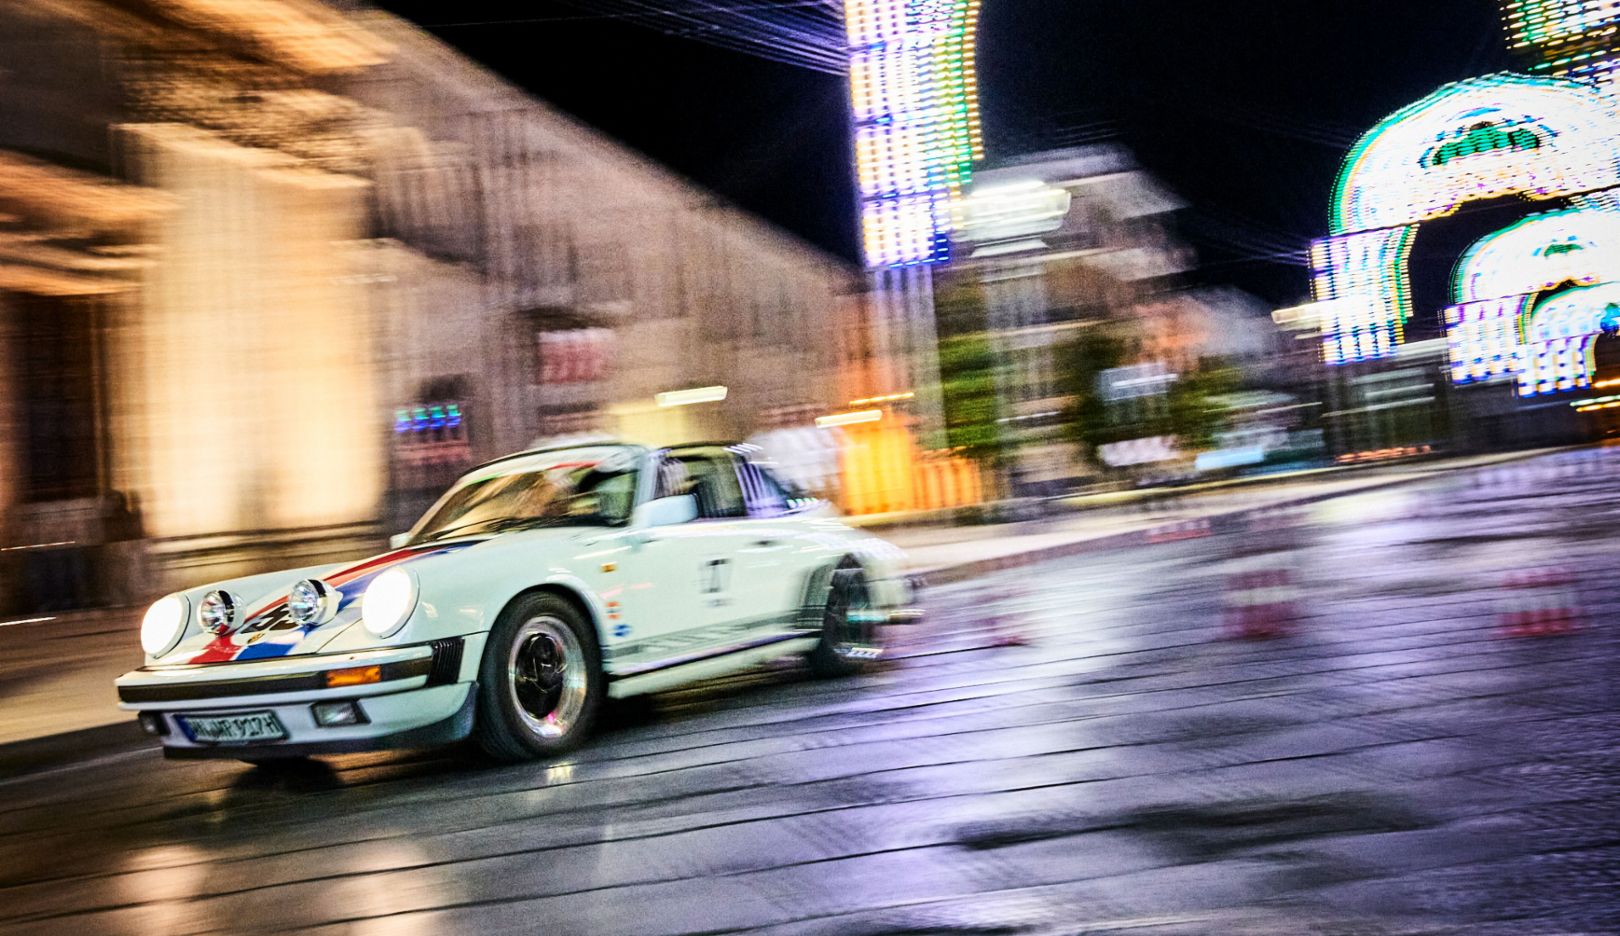 Protagonista nocturno: el 911 Carrera Targa del año 1986, en su recorrido bajo la iluminación festiva de Manduria.